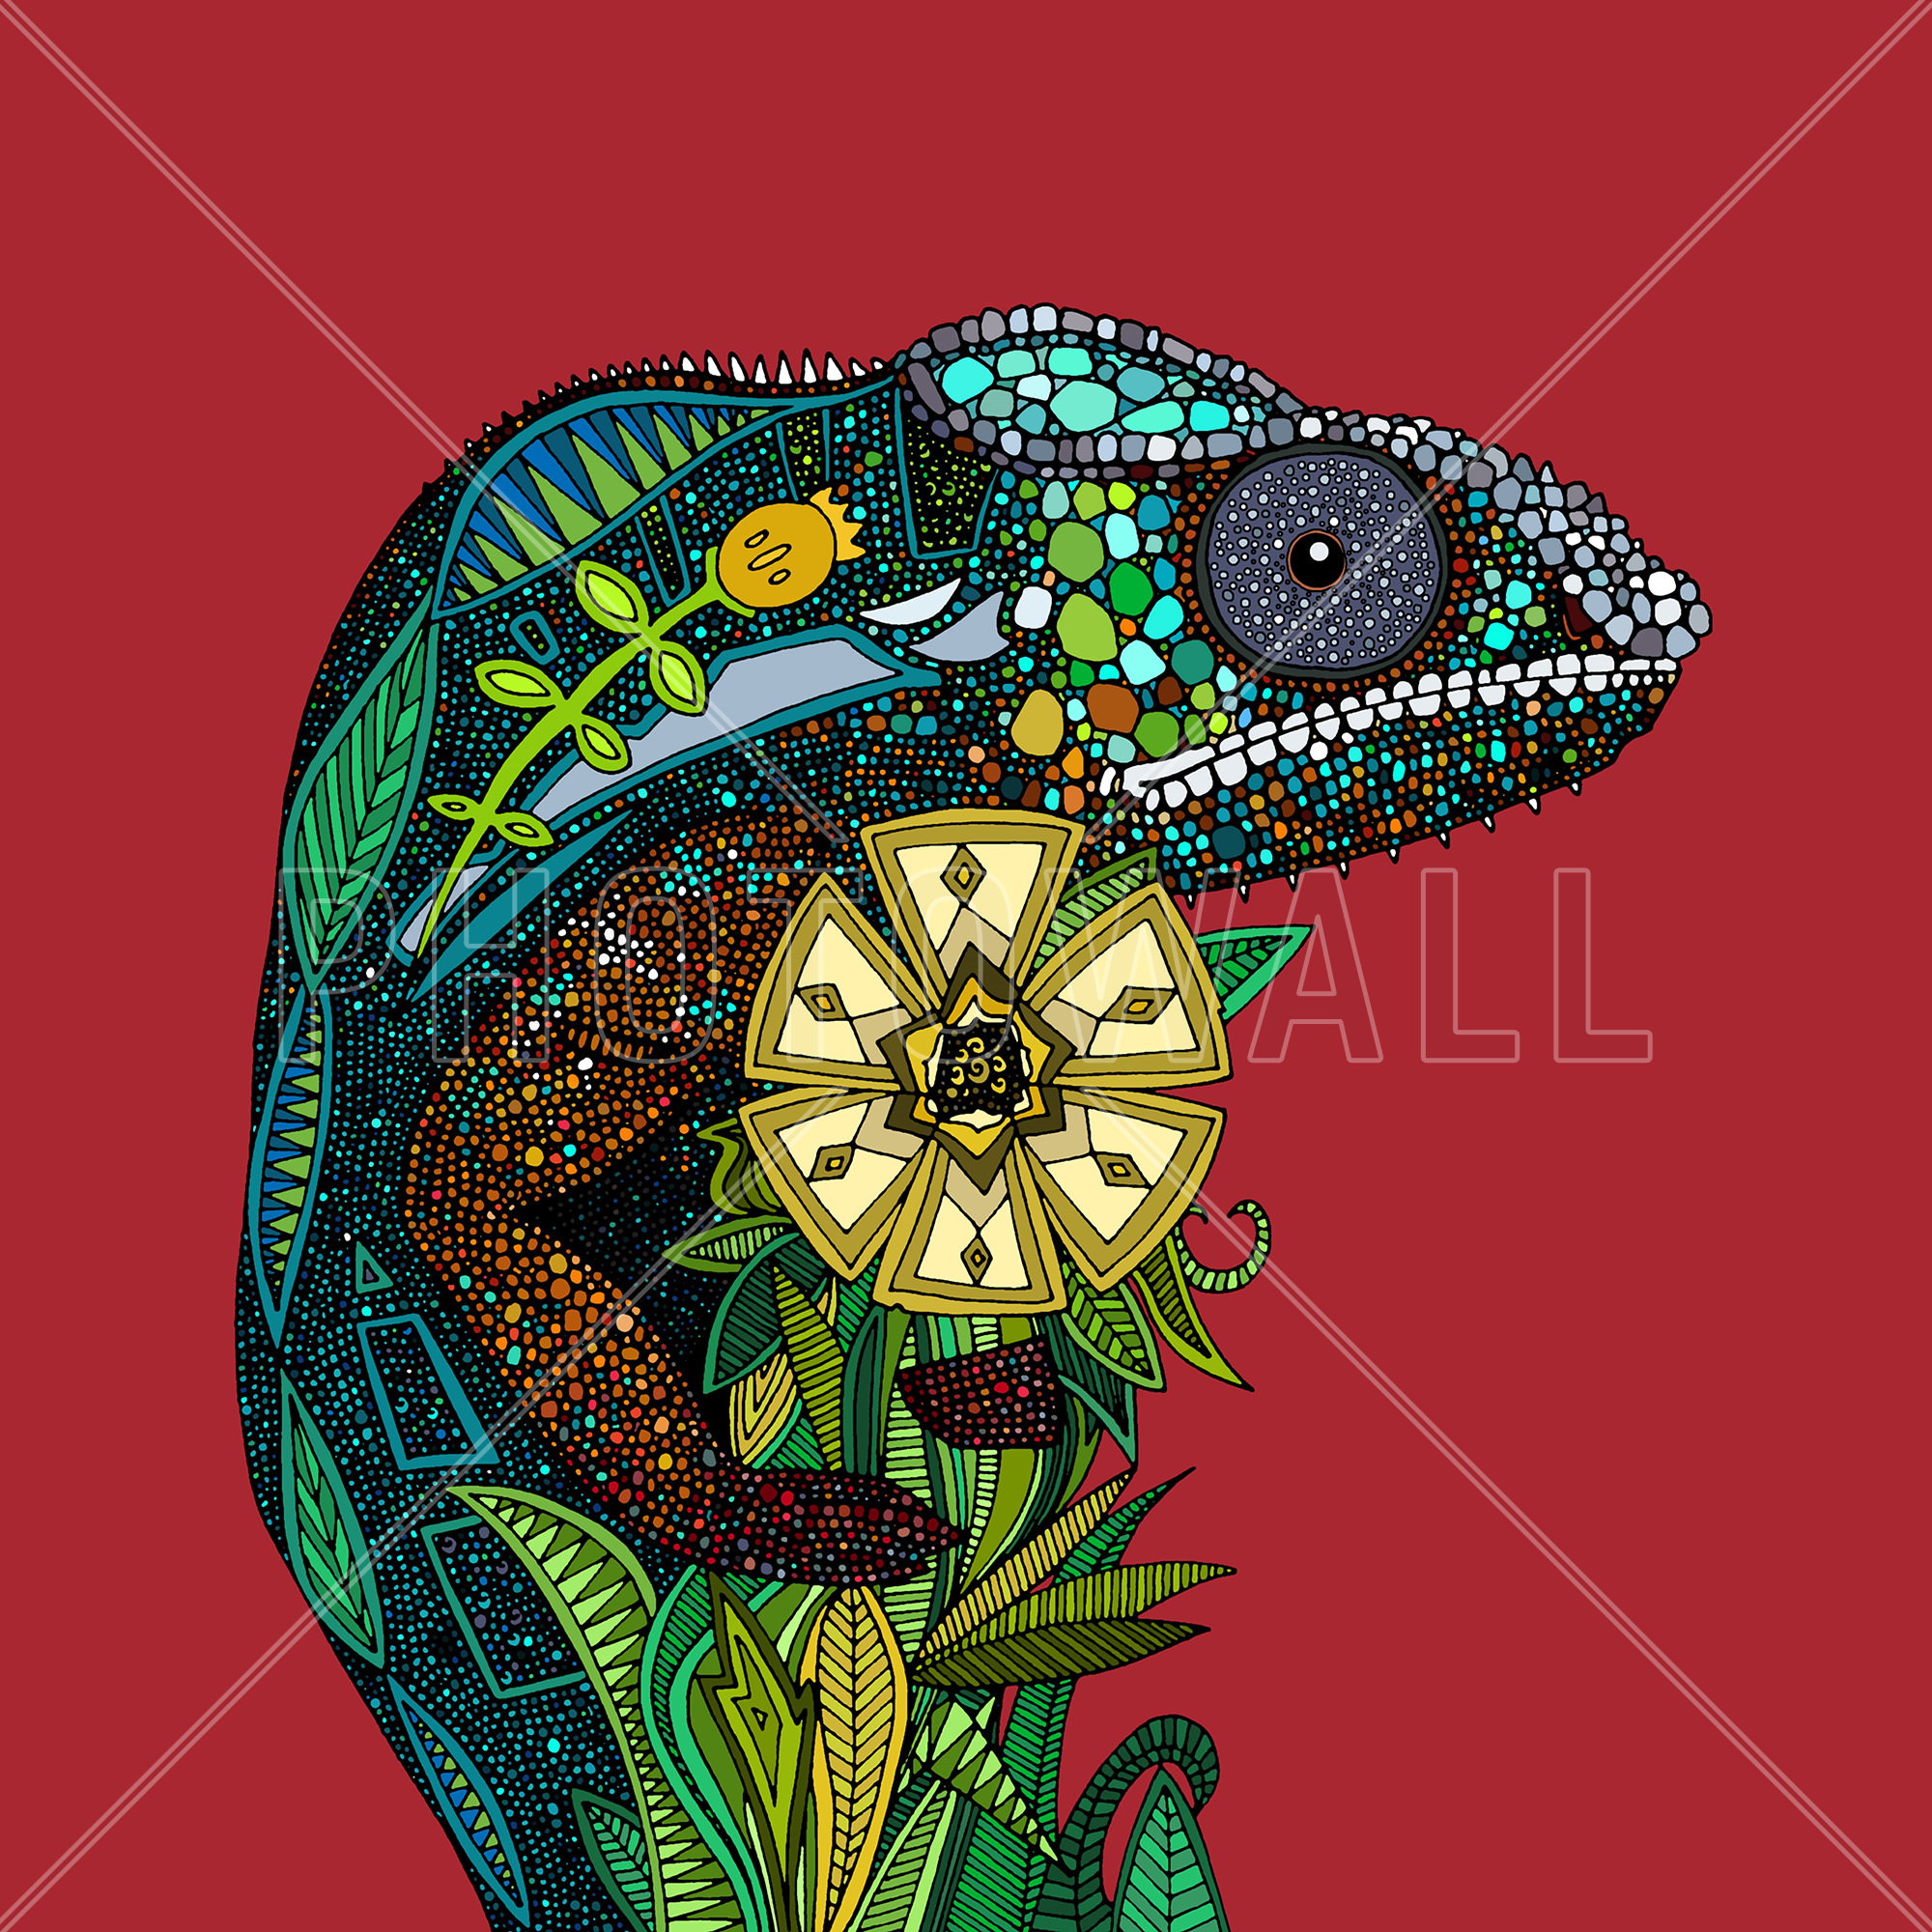 Chameleon - Wallpaper - Office - Chameleons - HD Wallpaper 